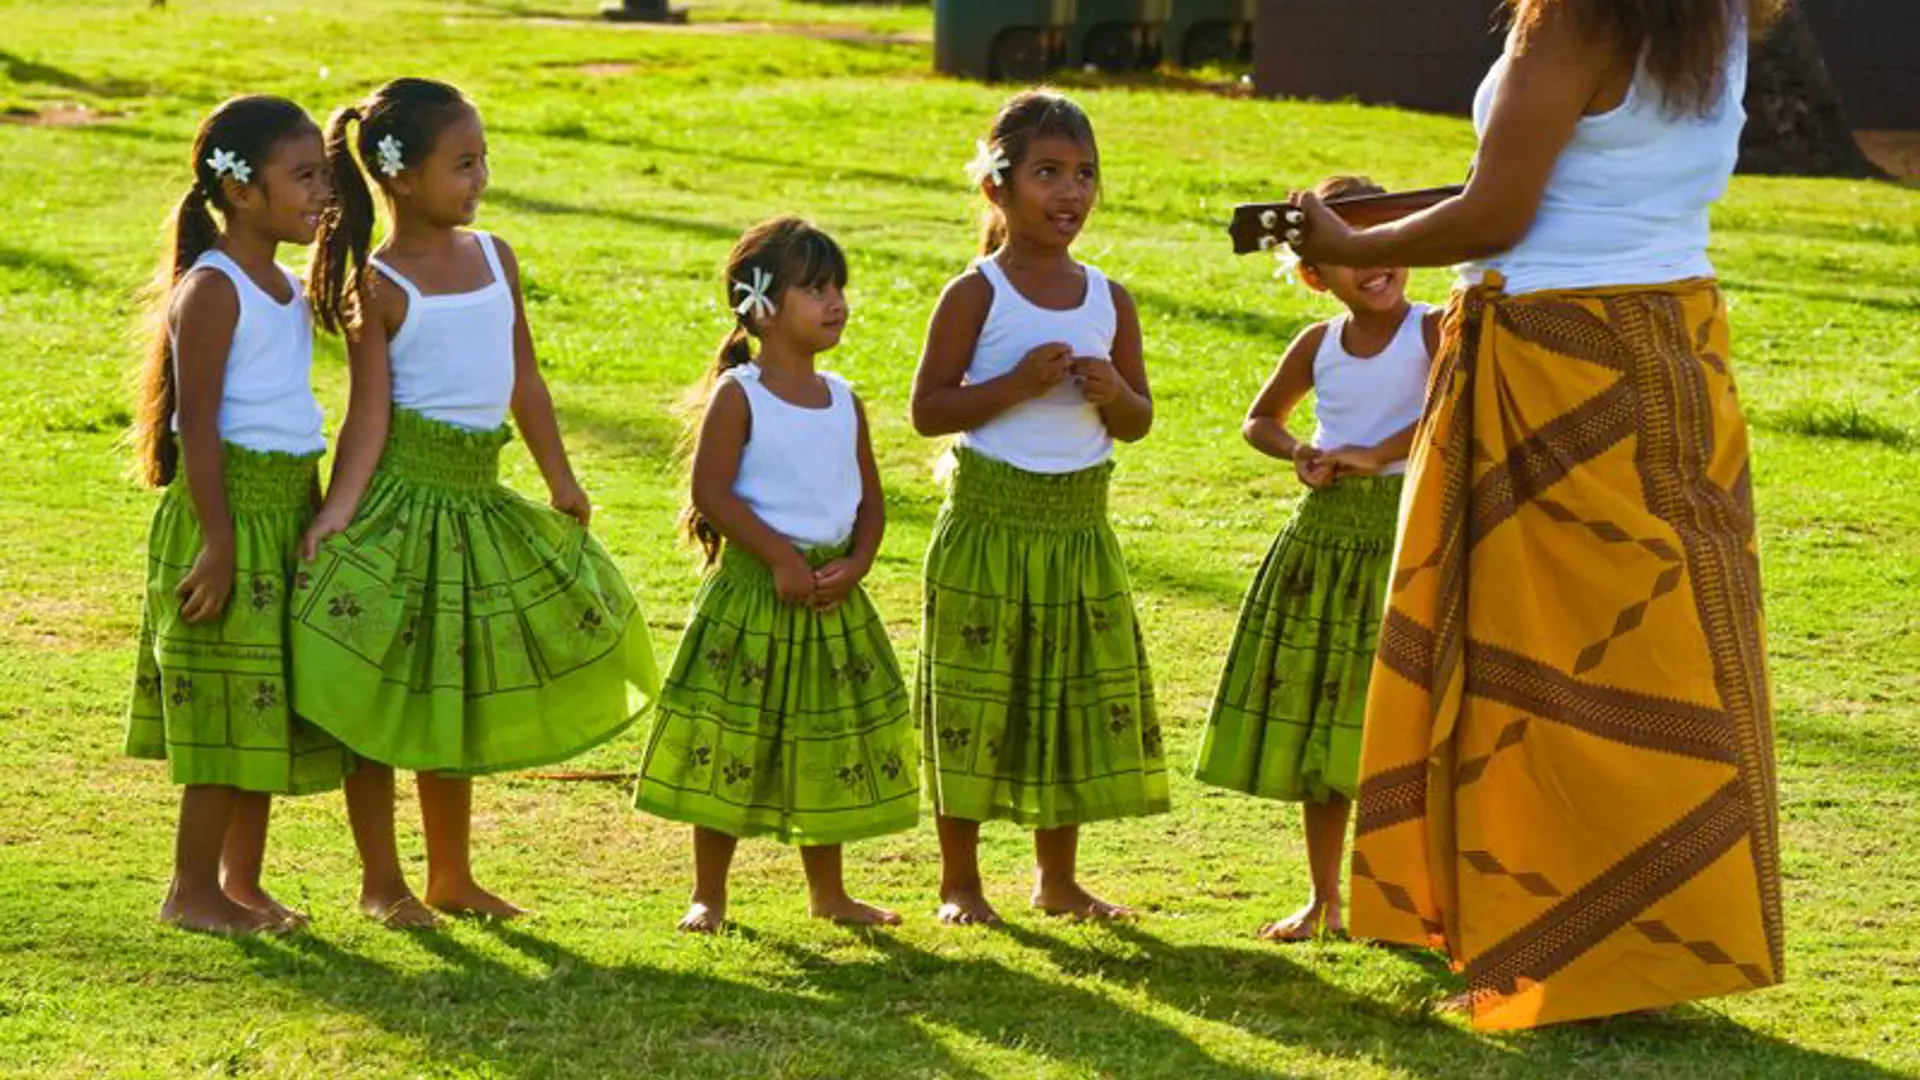 KULTUR - på Hawaii holder man fast i de gamle kulturelle traditioner og selv de yngste lærer de traditionelle danse